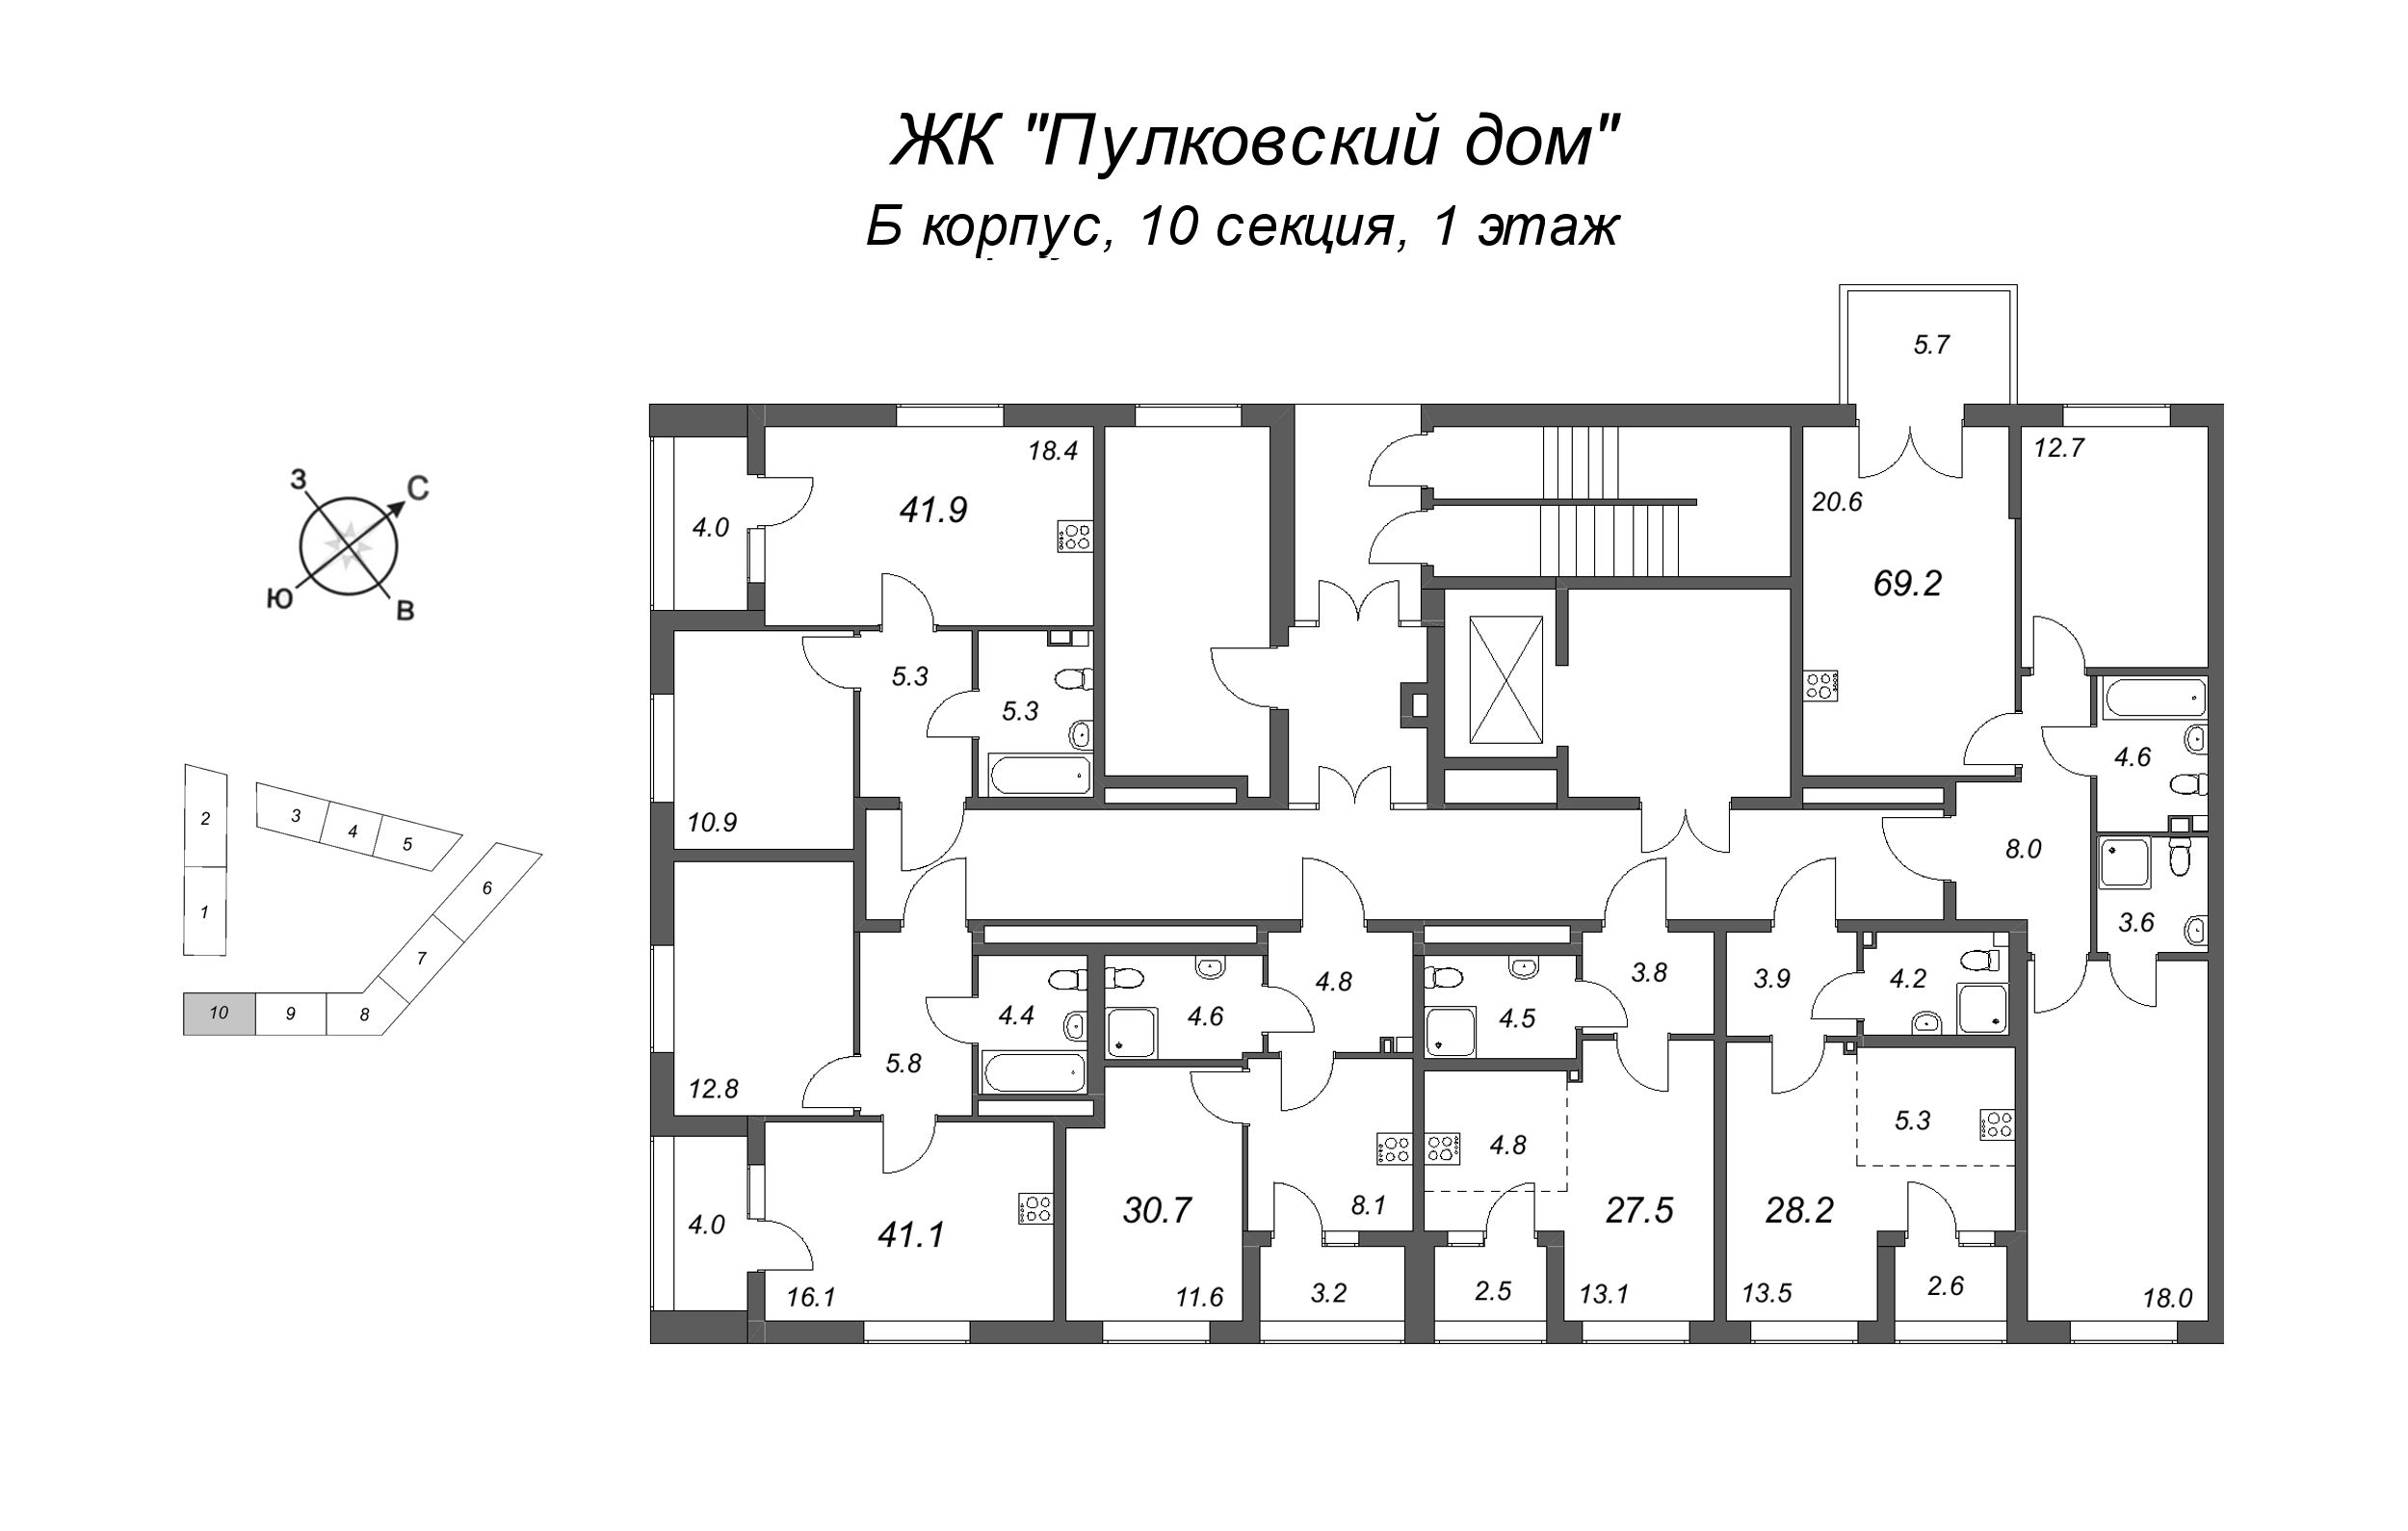 Квартира-студия, 28.2 м² в ЖК "Пулковский дом" - планировка этажа